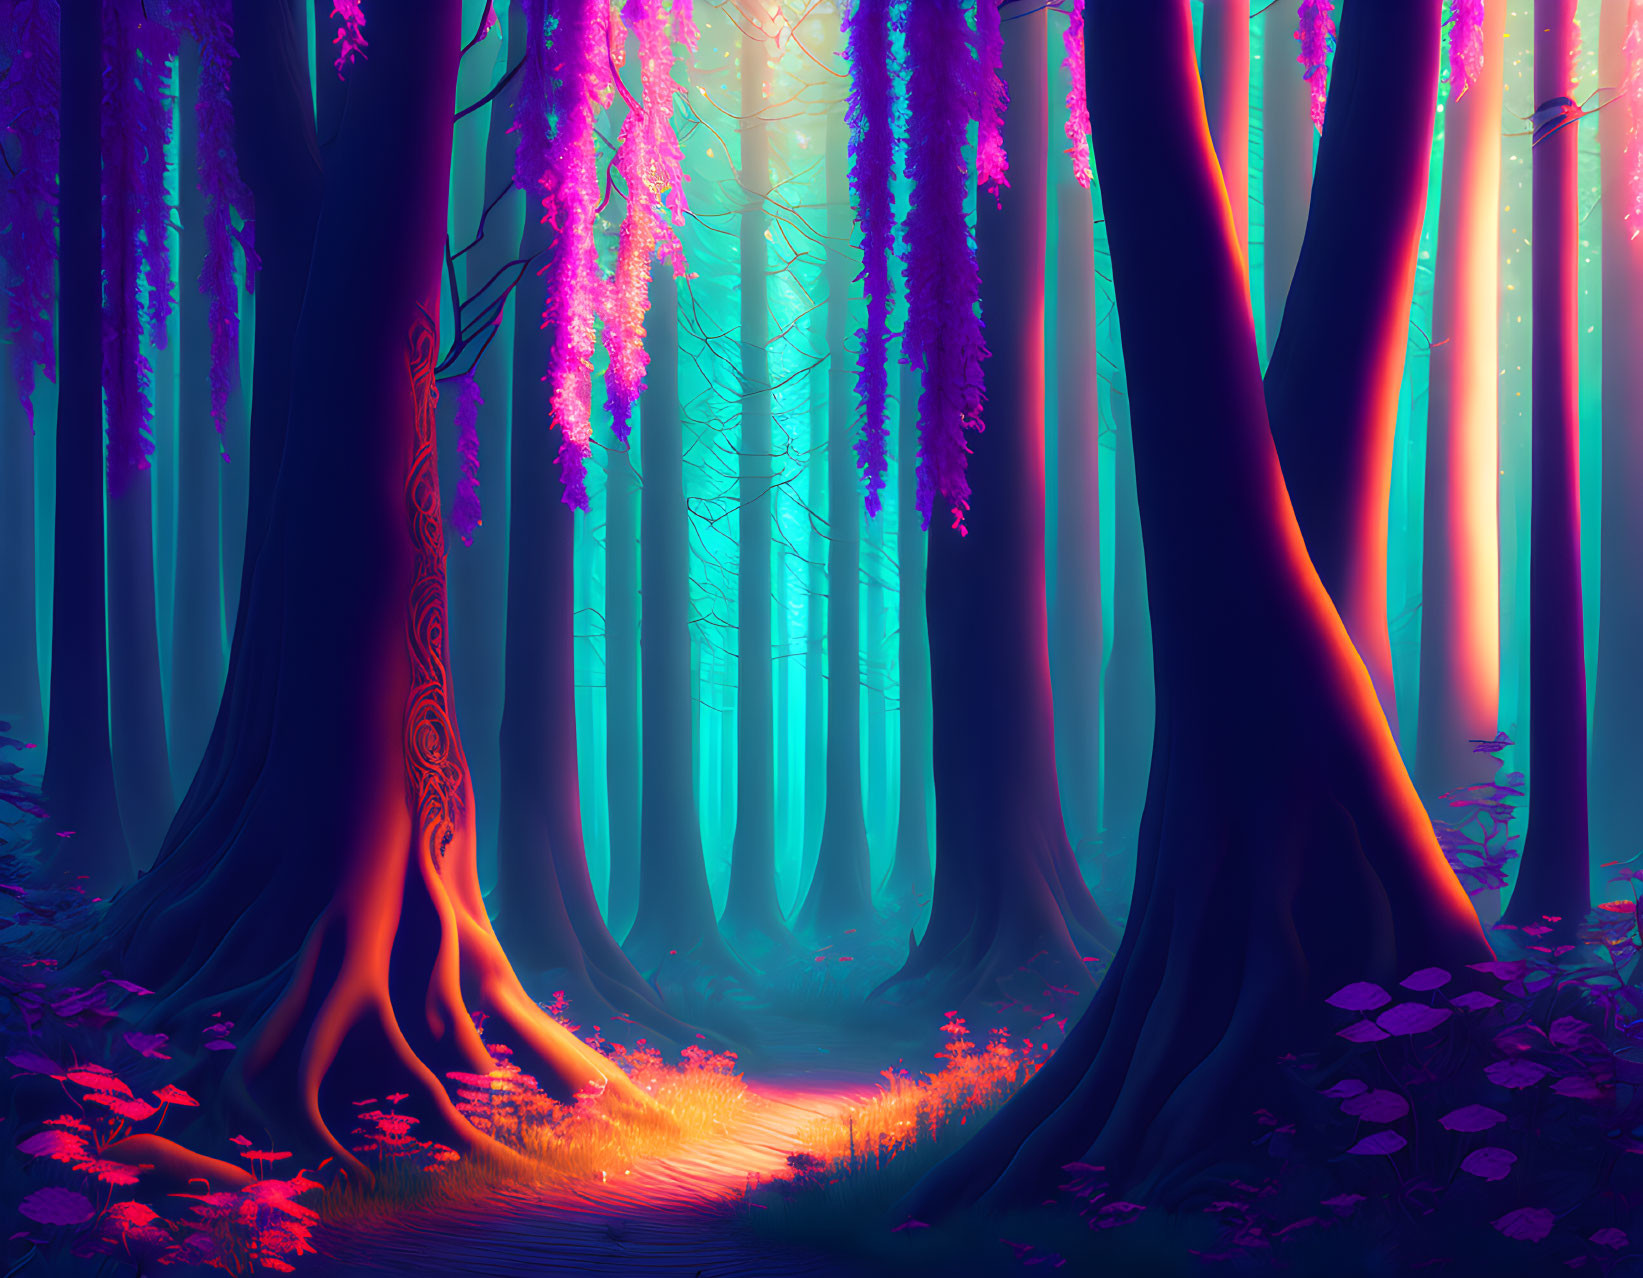  Dark Eldritch Forest